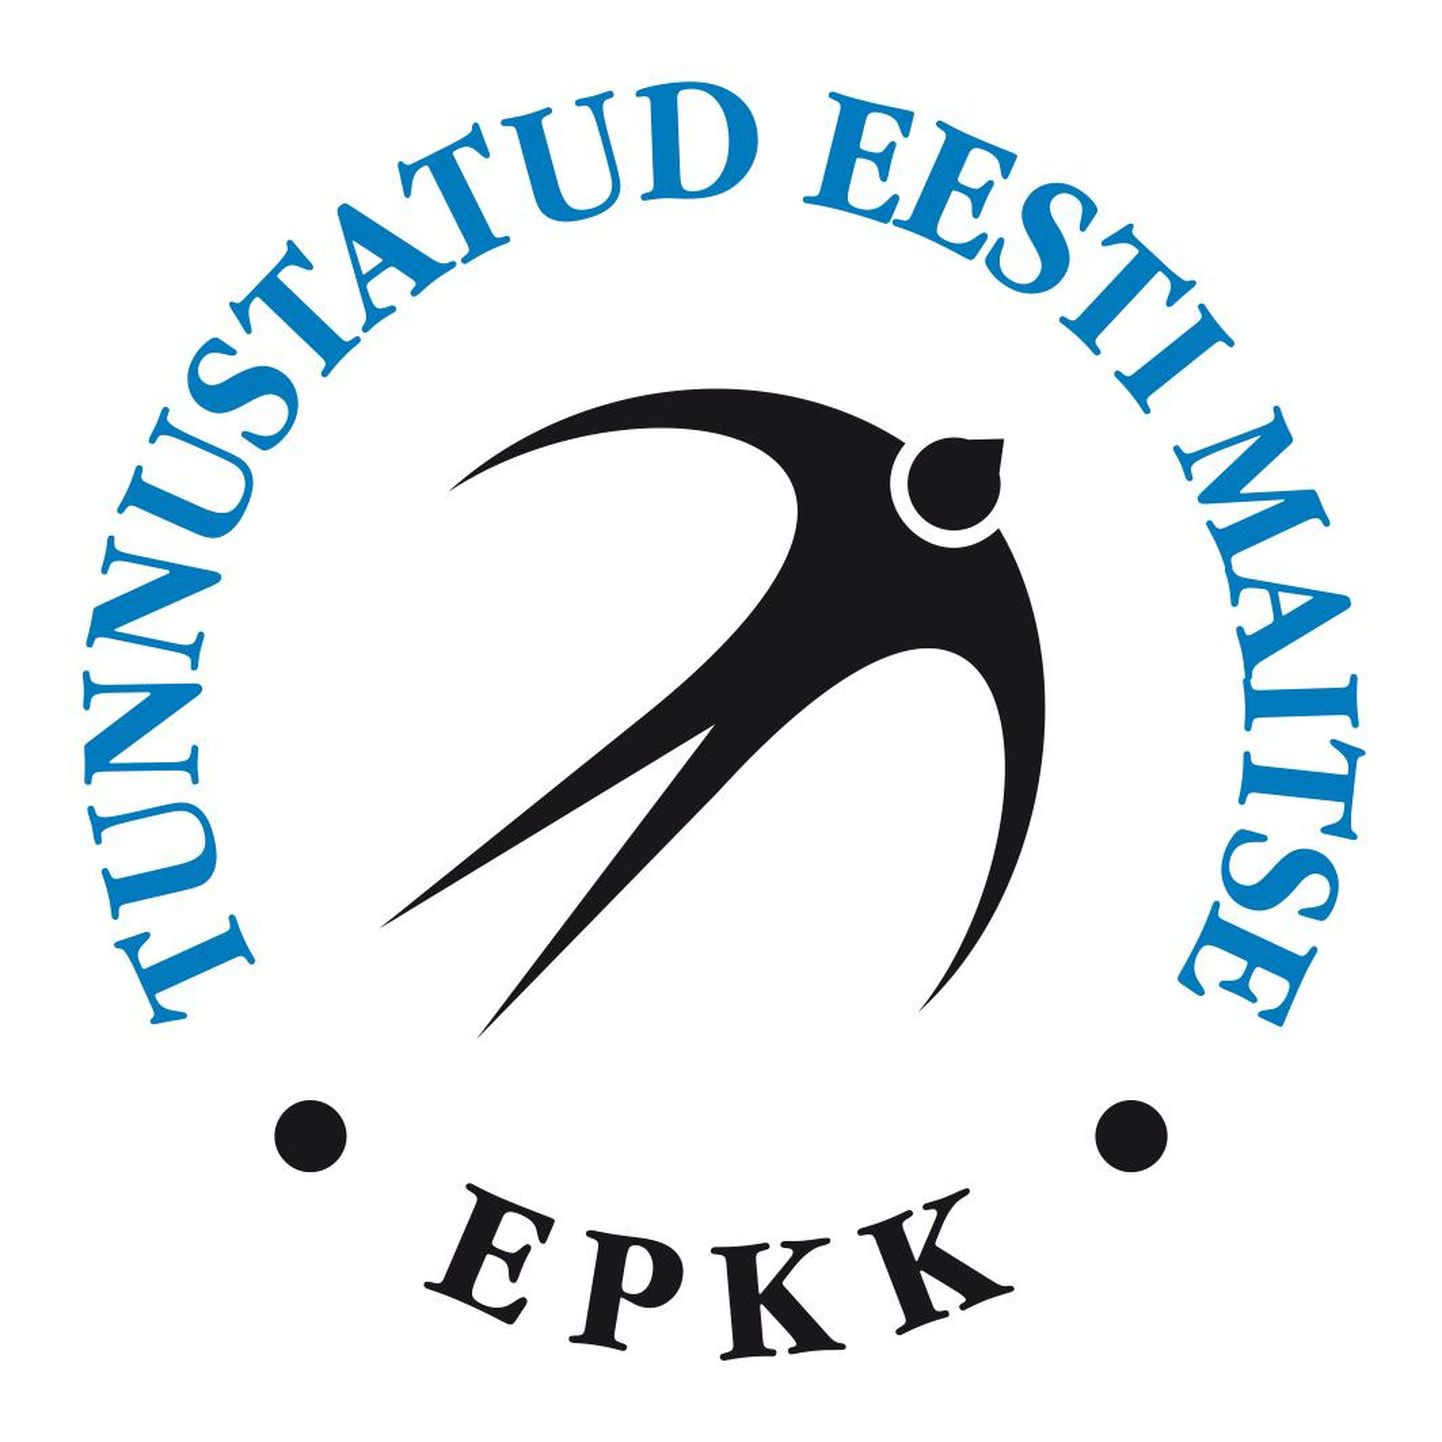 Eesti põllumajandus-kaubanduskoda andis pääsukesemärgi esimest korda välja 2000. aastal.